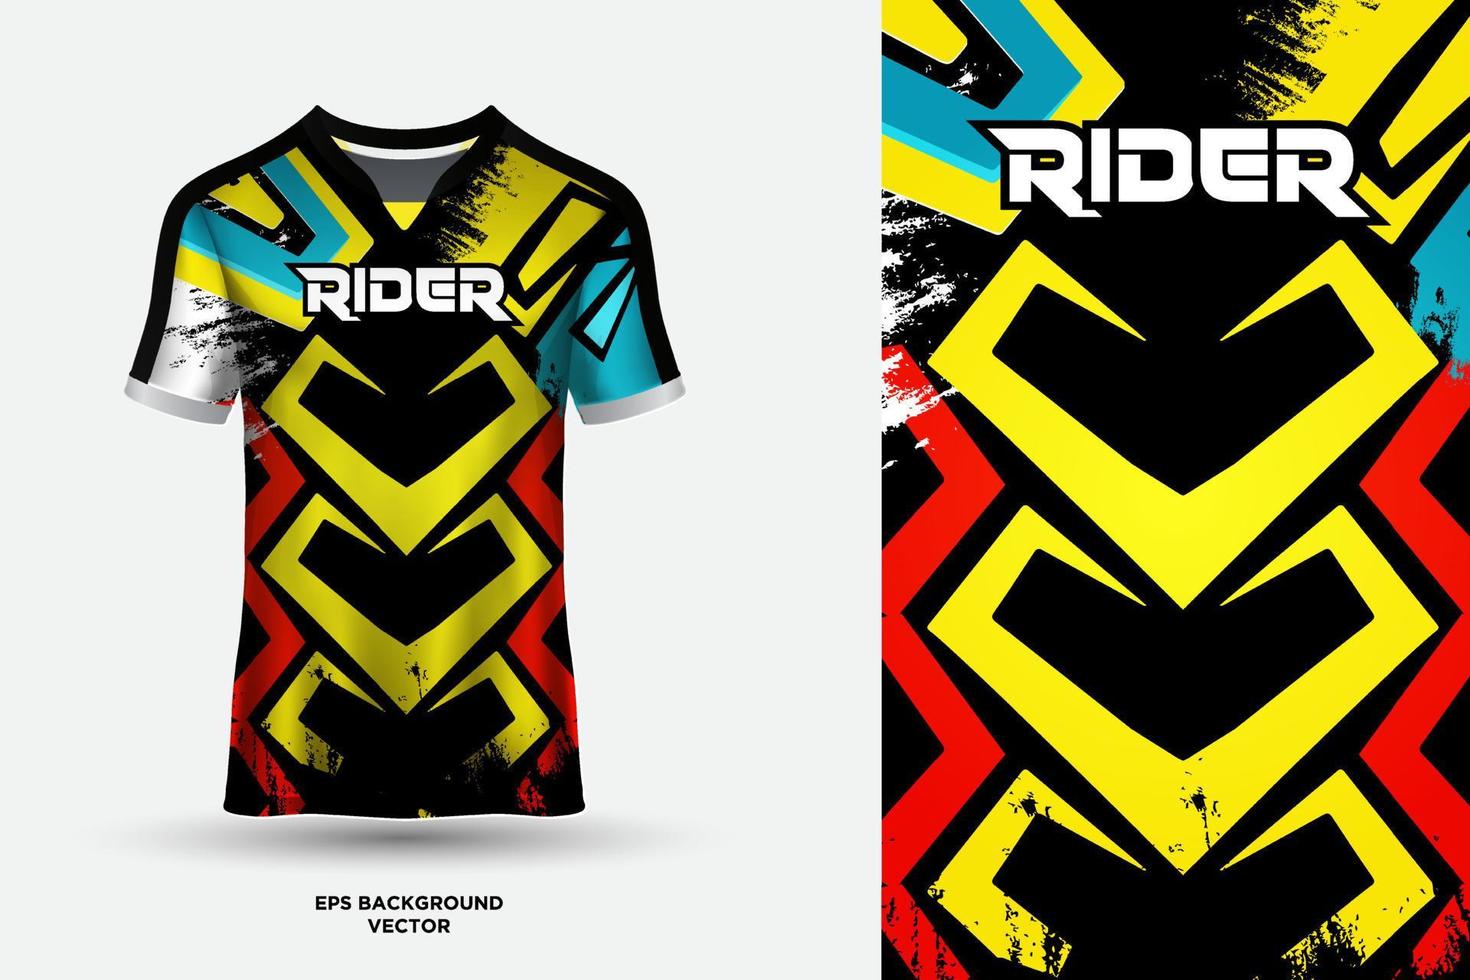 futuristico t camicia maglia design adatto per gli sport, da corsa, calcio, gioco e e gli sport vettore